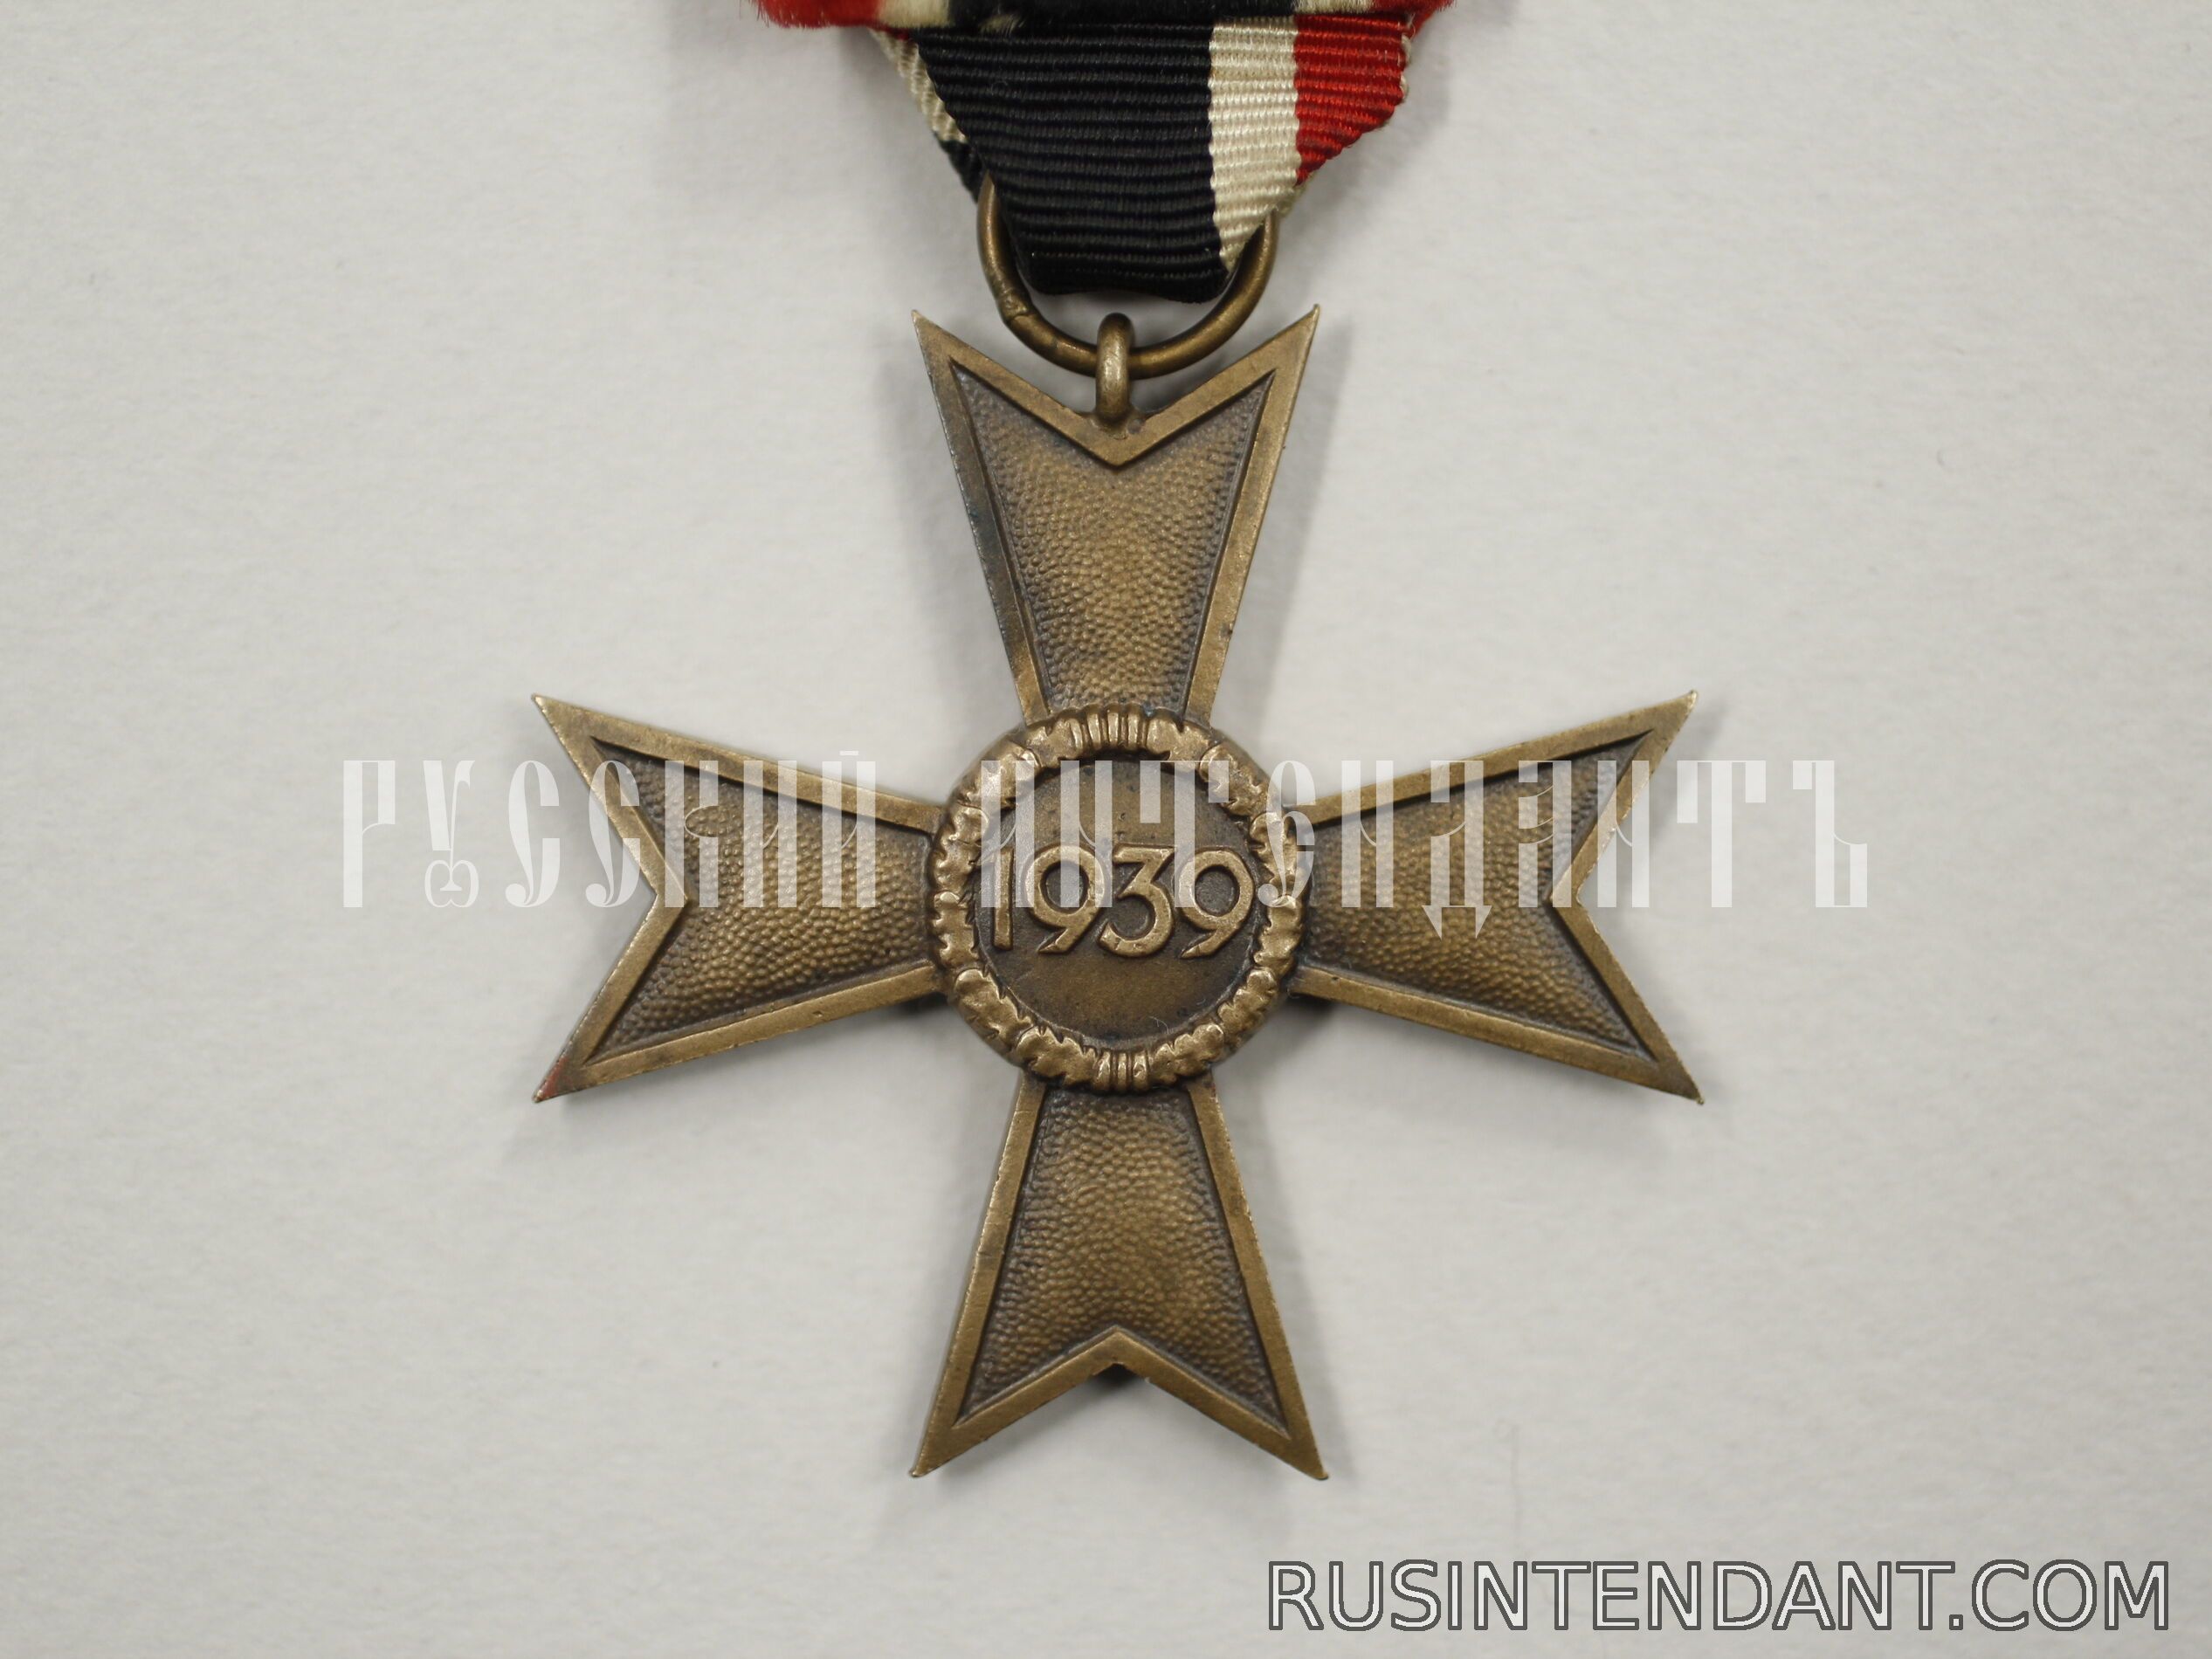 Фото 2: Крест Военных заслуг второго класса без мечей 